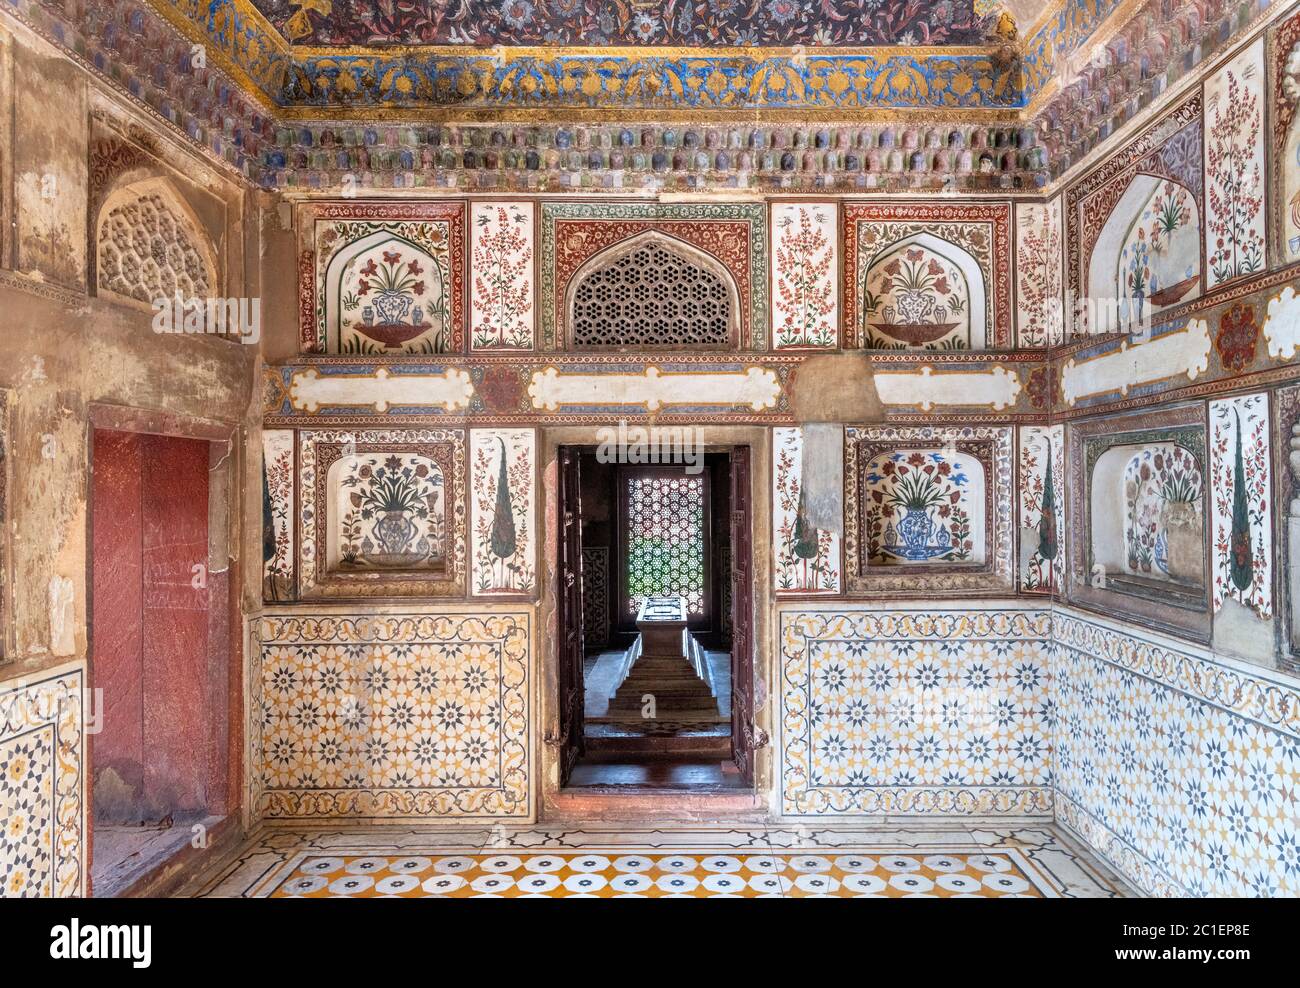 Sala de entrada, Tumba de Itmad-ud-Daulah (I'timād-ud-Daulah), también conocido como 'Baby Taj', un mausoleo de Mughal en la ciudad de Agra, Uttar Pradesh, India Foto de stock